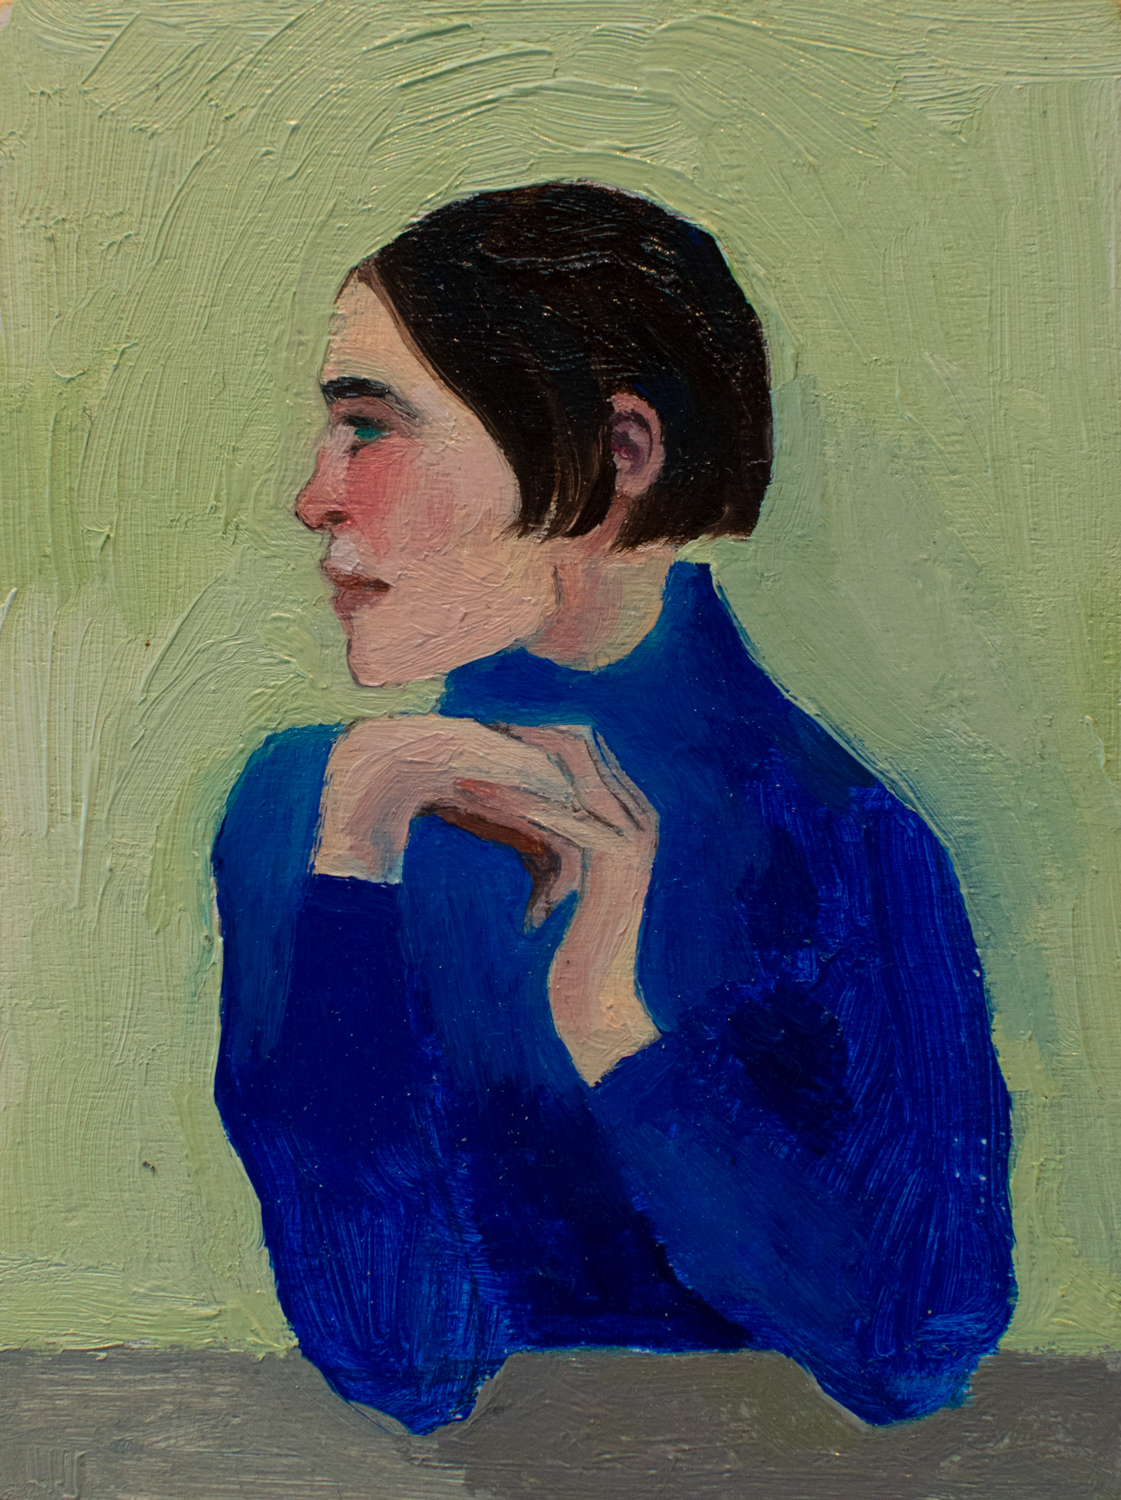 Portrait of the artist, inspired by Gustav Klimt